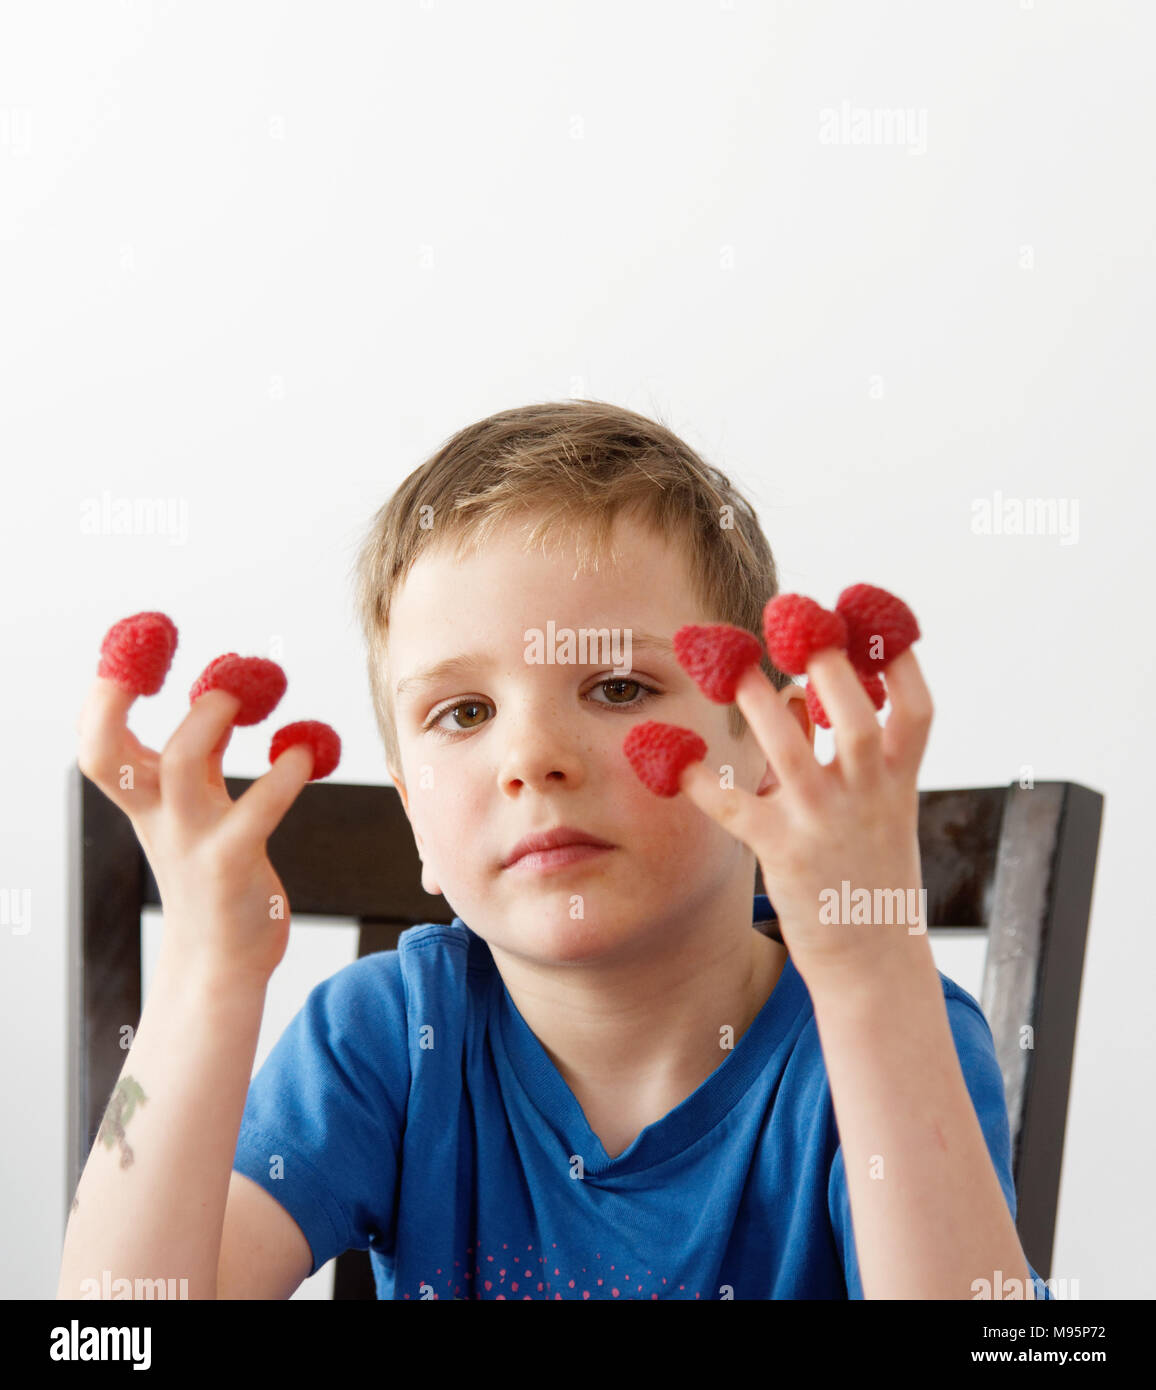 Ein kleiner Junge (5 Jahre alt) mit Himbeeren auf seine Finger Stockfoto